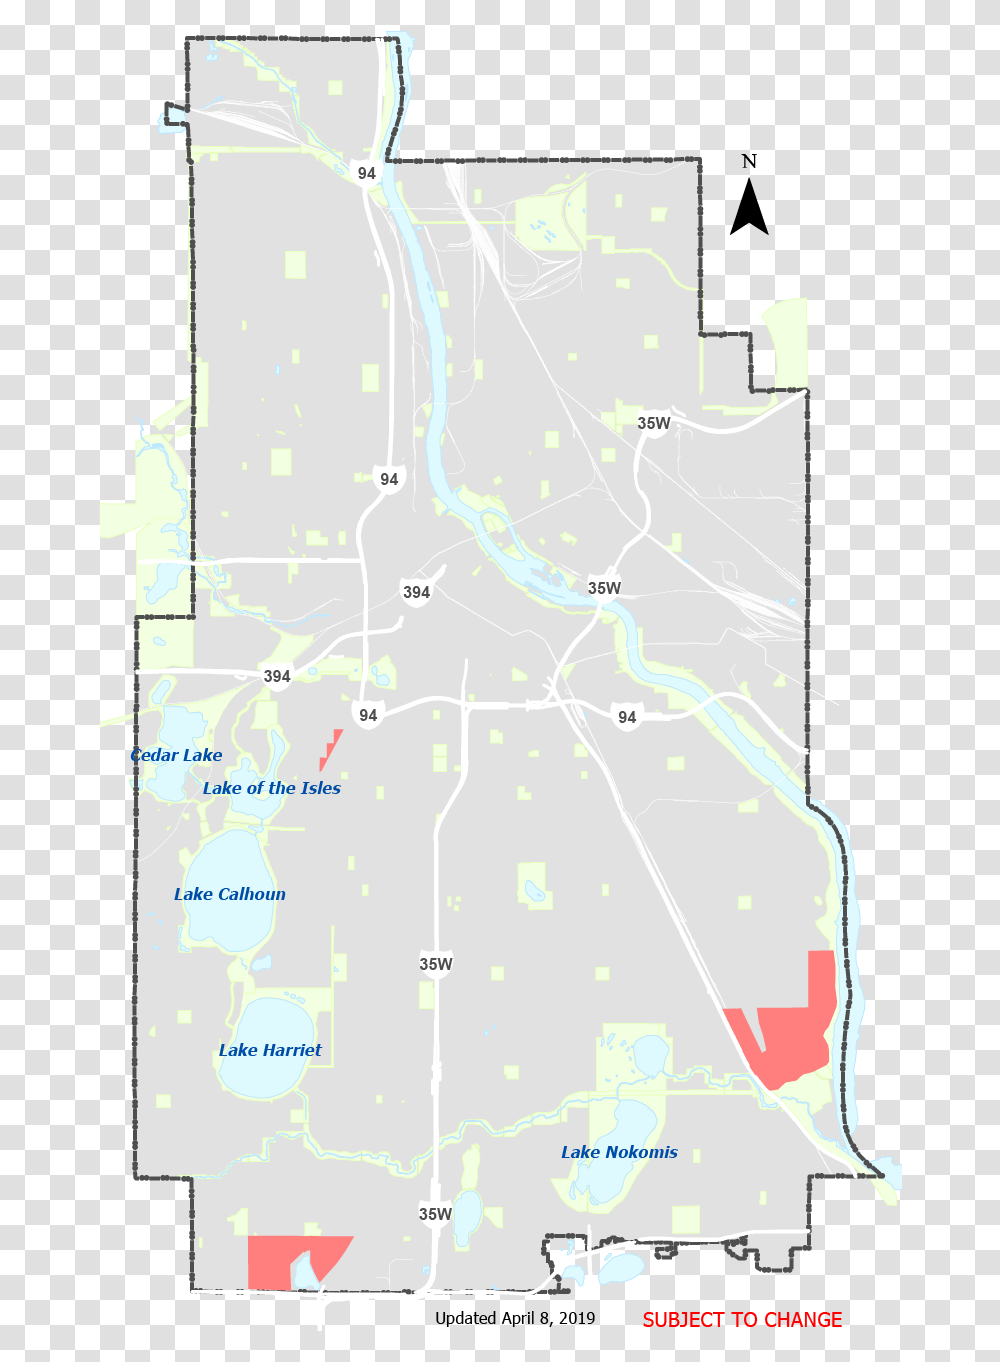 2018 Sidewalk Repair Areas Map Map, Diagram, Plot, Poster, Advertisement Transparent Png